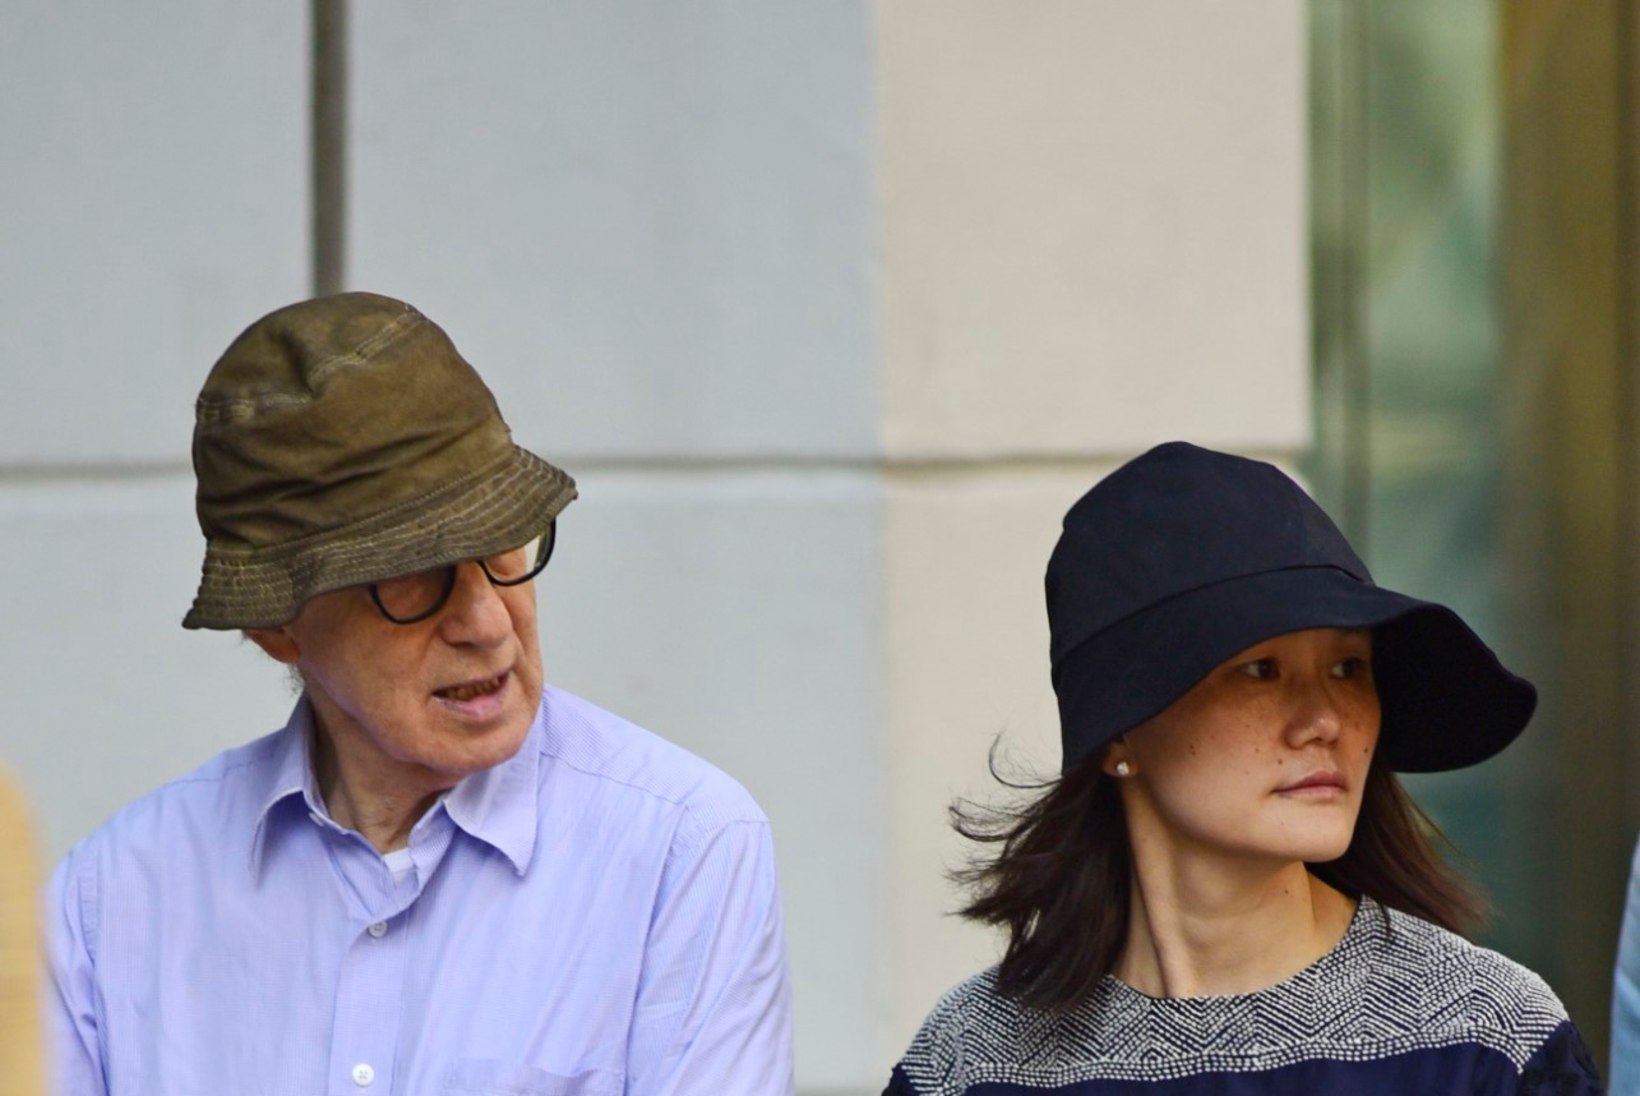 FOTOD: Woody Allen käis koos oma 37 aastat noorema abikaasaga jalutuskäigul